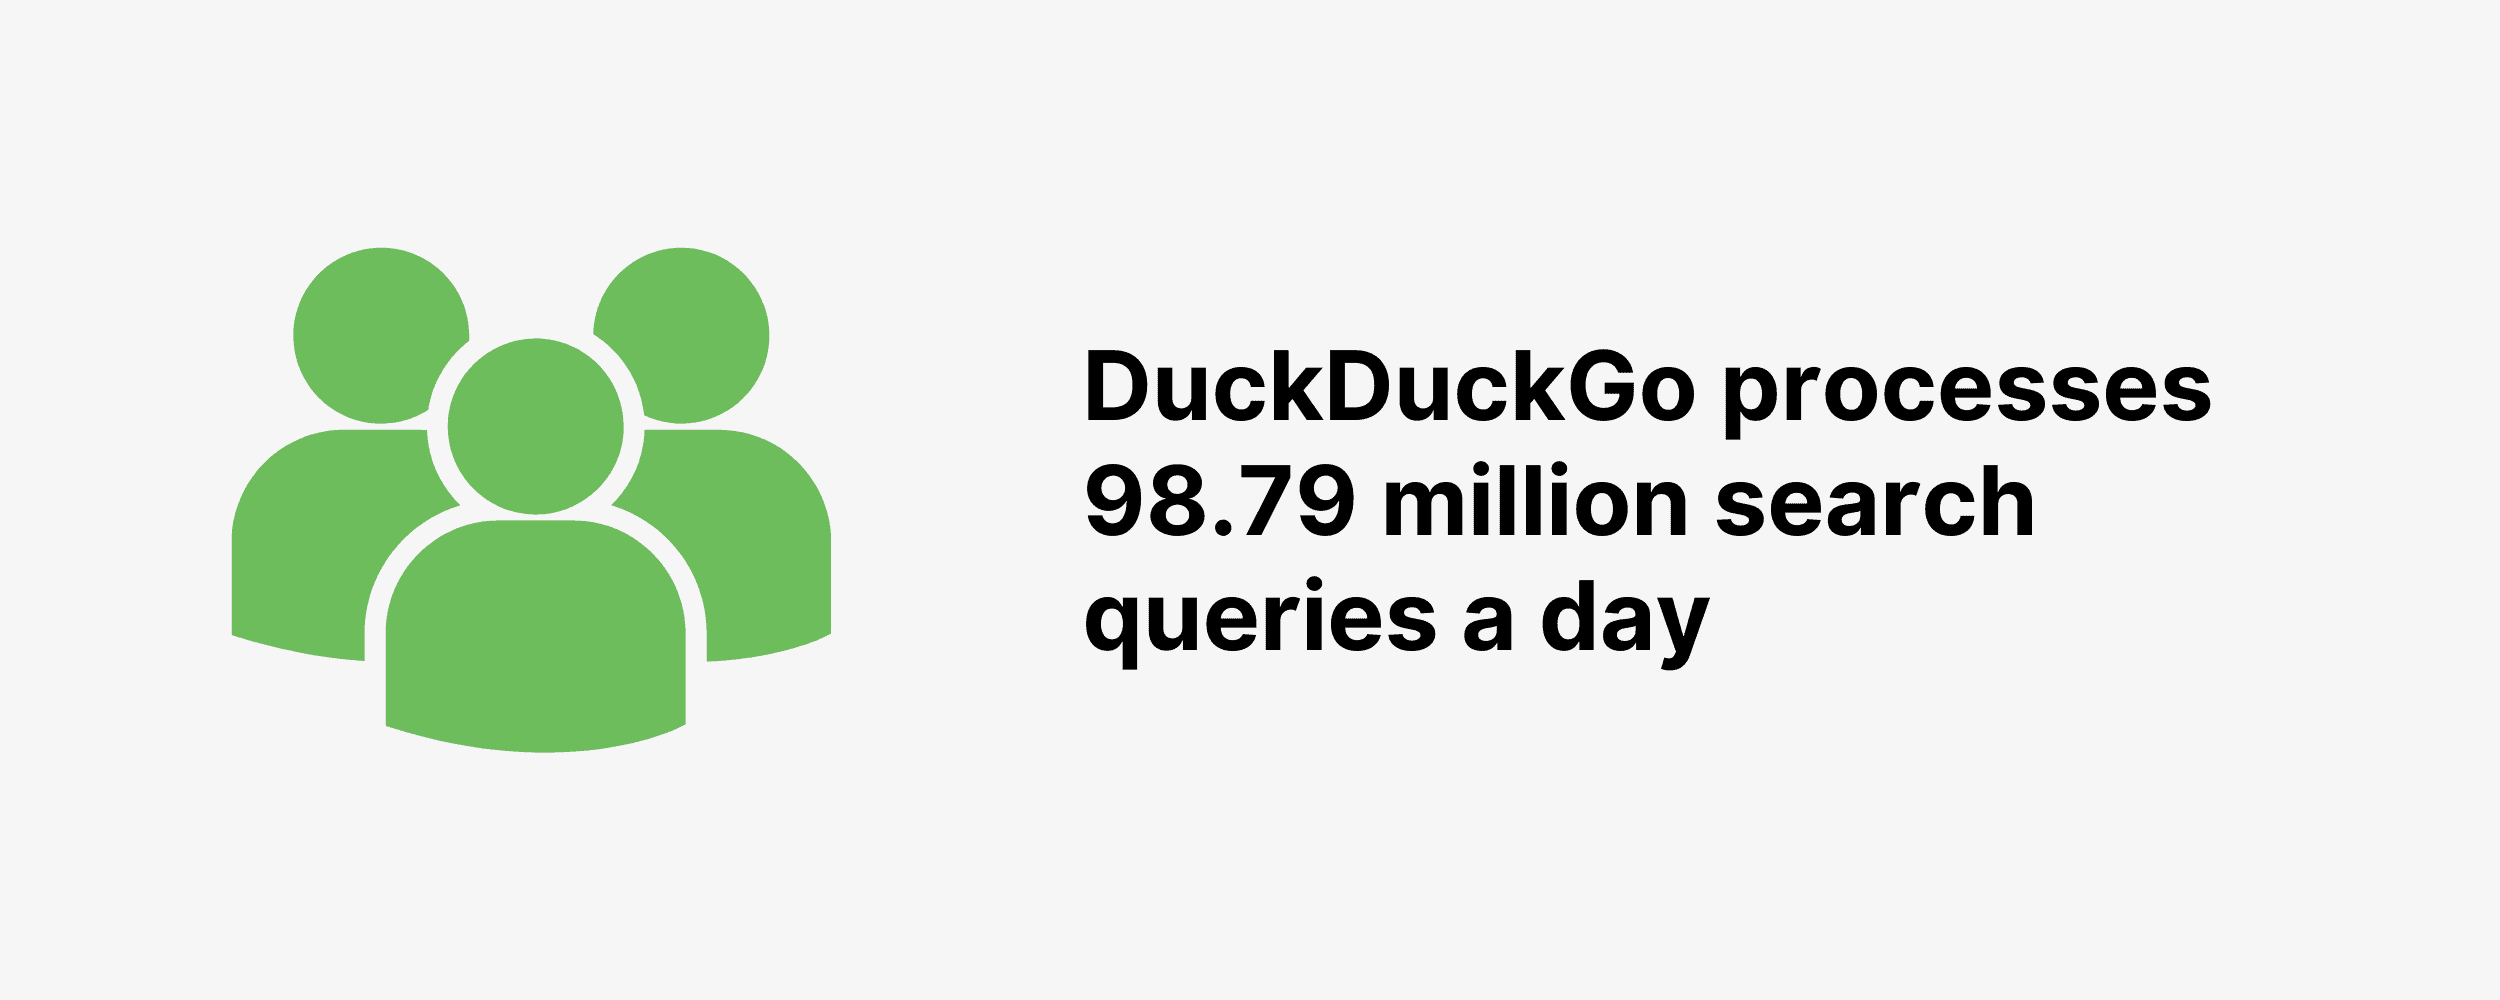 DuckDuckGo processes 98.79 million search queries a day